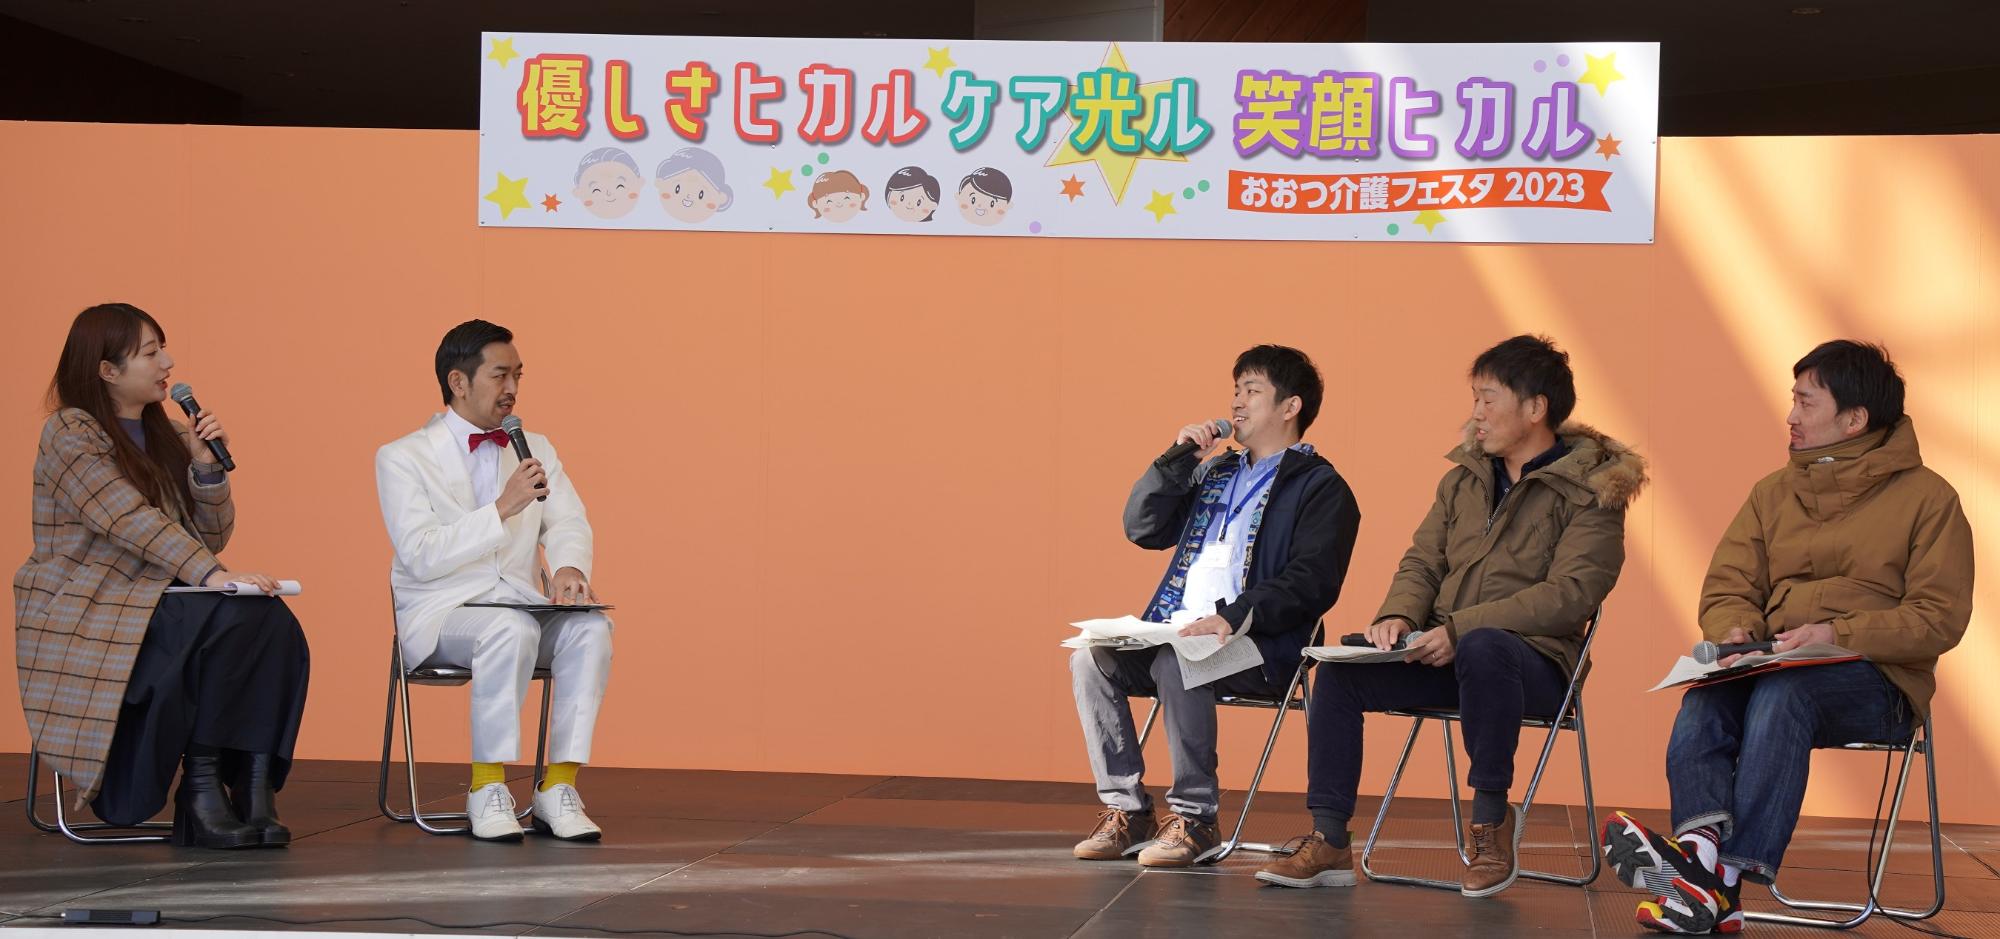 ムーディ勝山さんと介護職員とのトークショーの写真